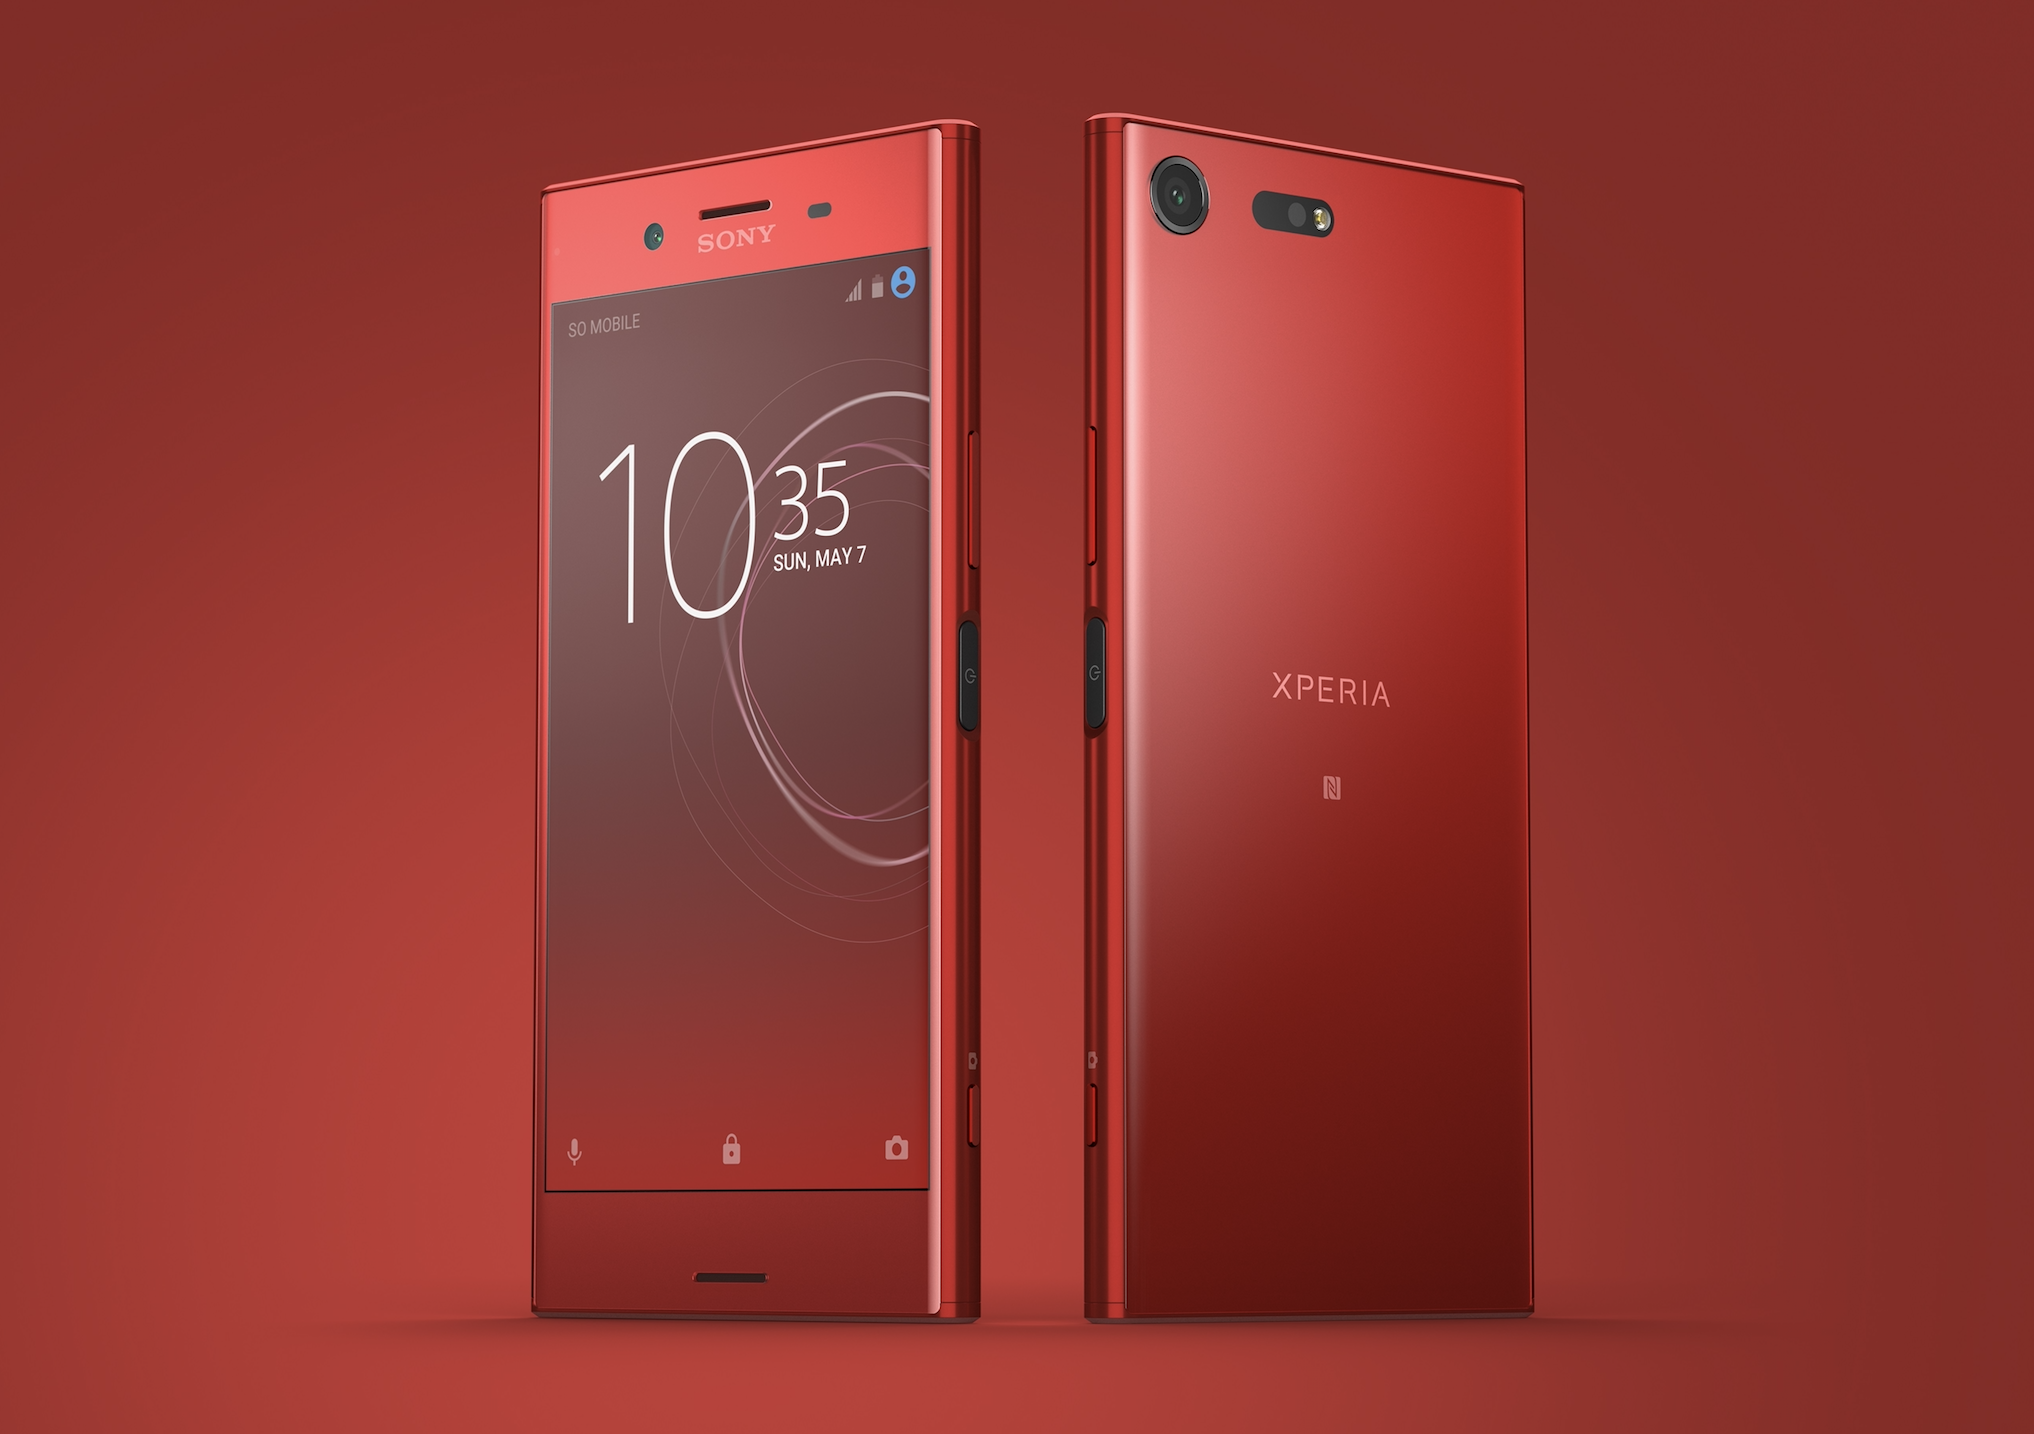 Xperia XZ Premium 新色 Rosso 鏡紅 台灣發售確定 10.25 新品發表會